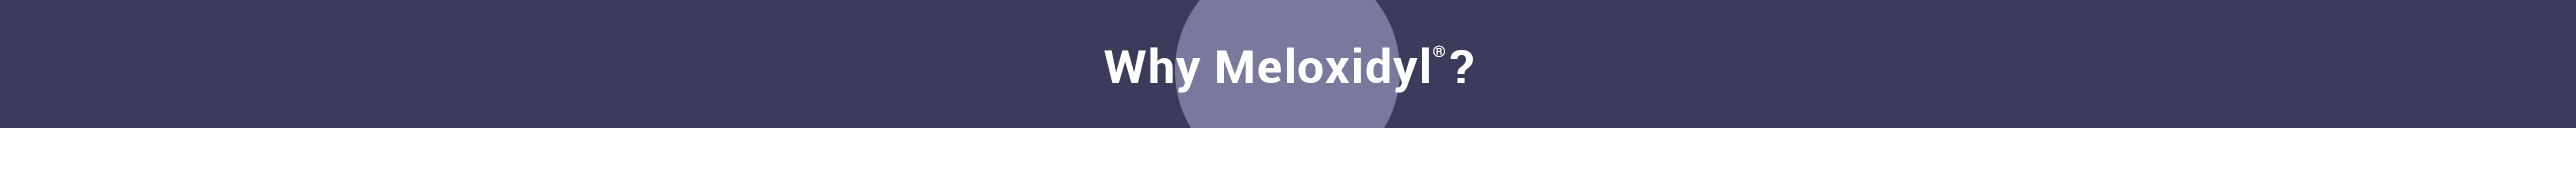 WhyMeloxidyl-Slider-5